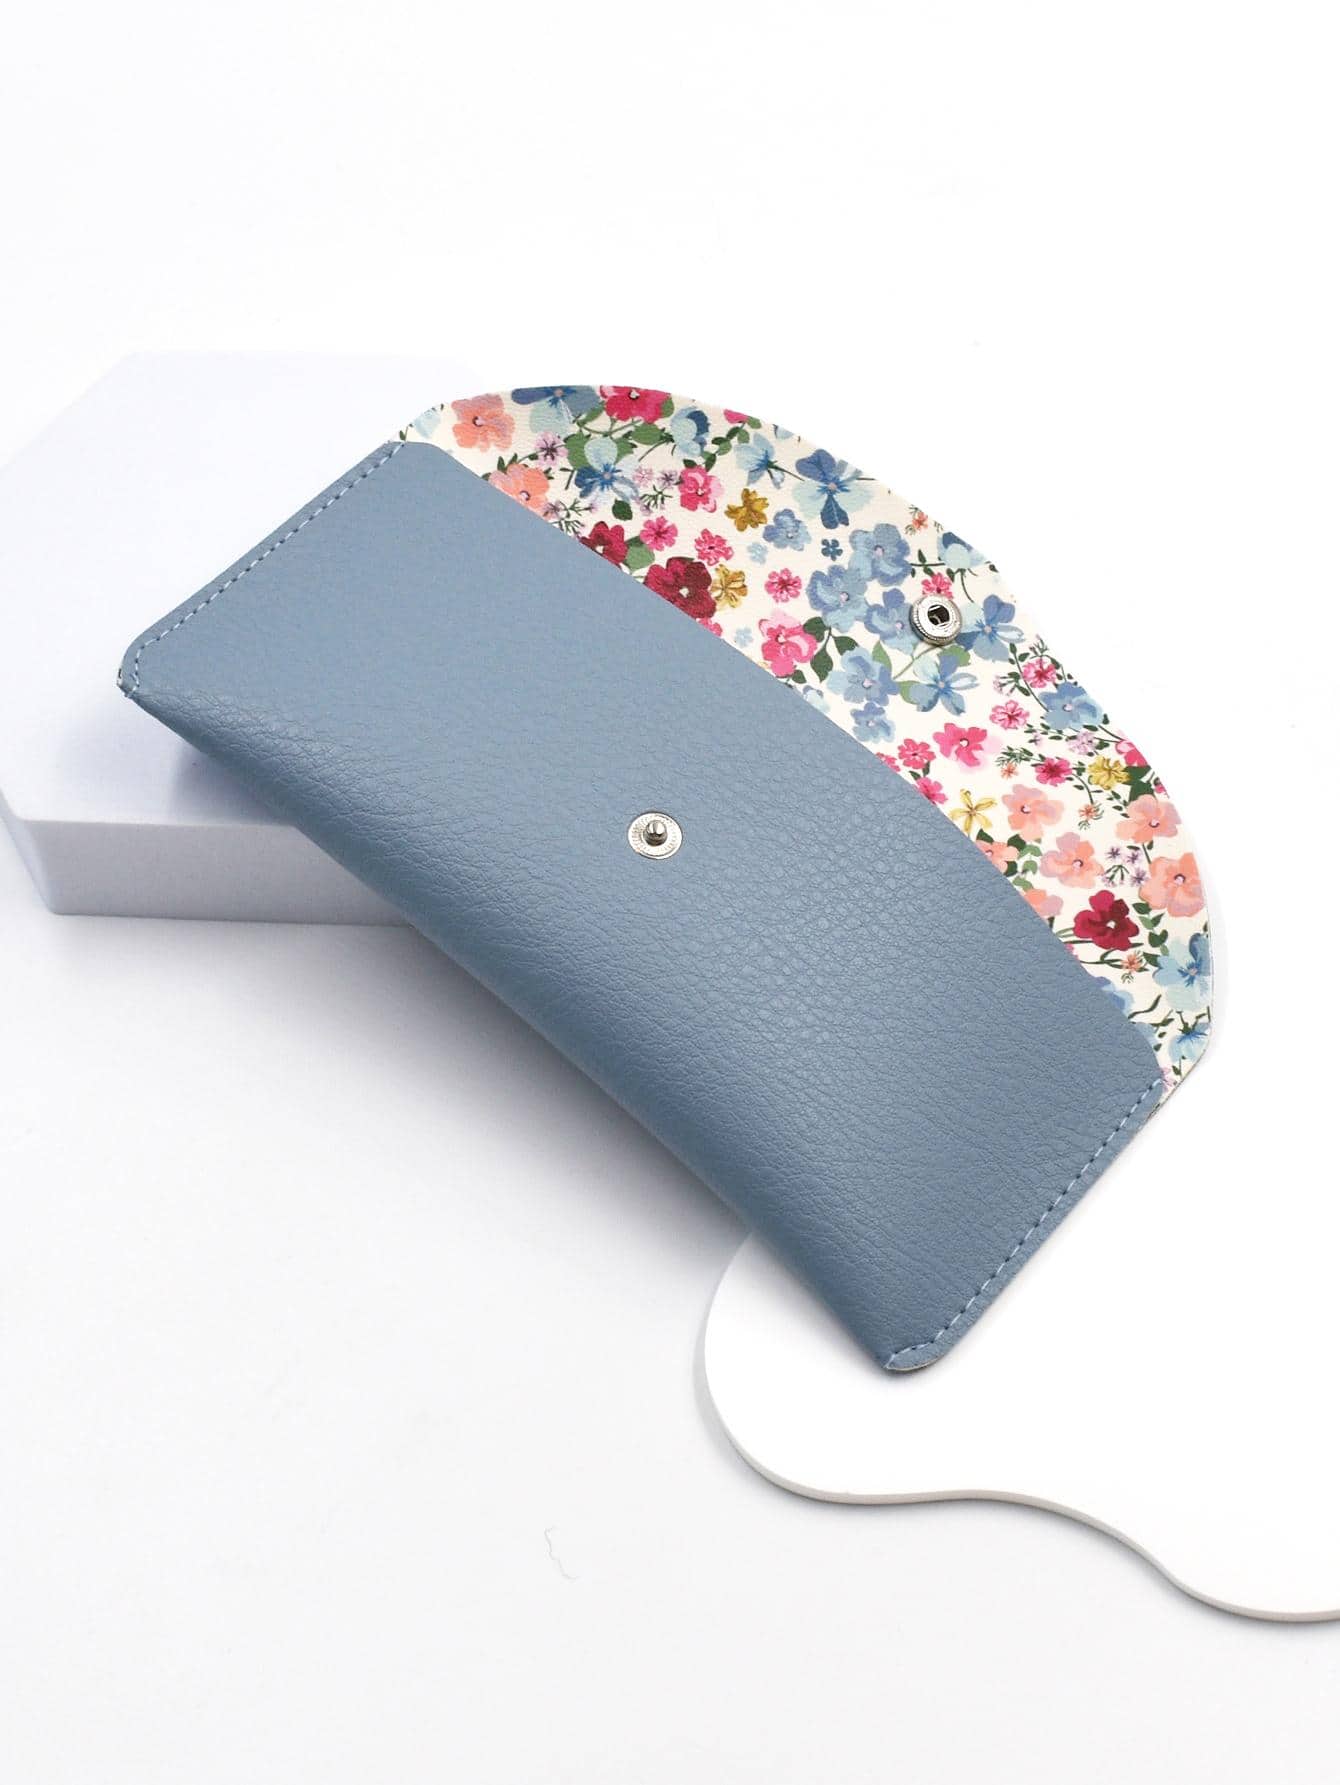 1 шт. модная женская сумка ярких цветов с цветочным узором и кнопками, синий